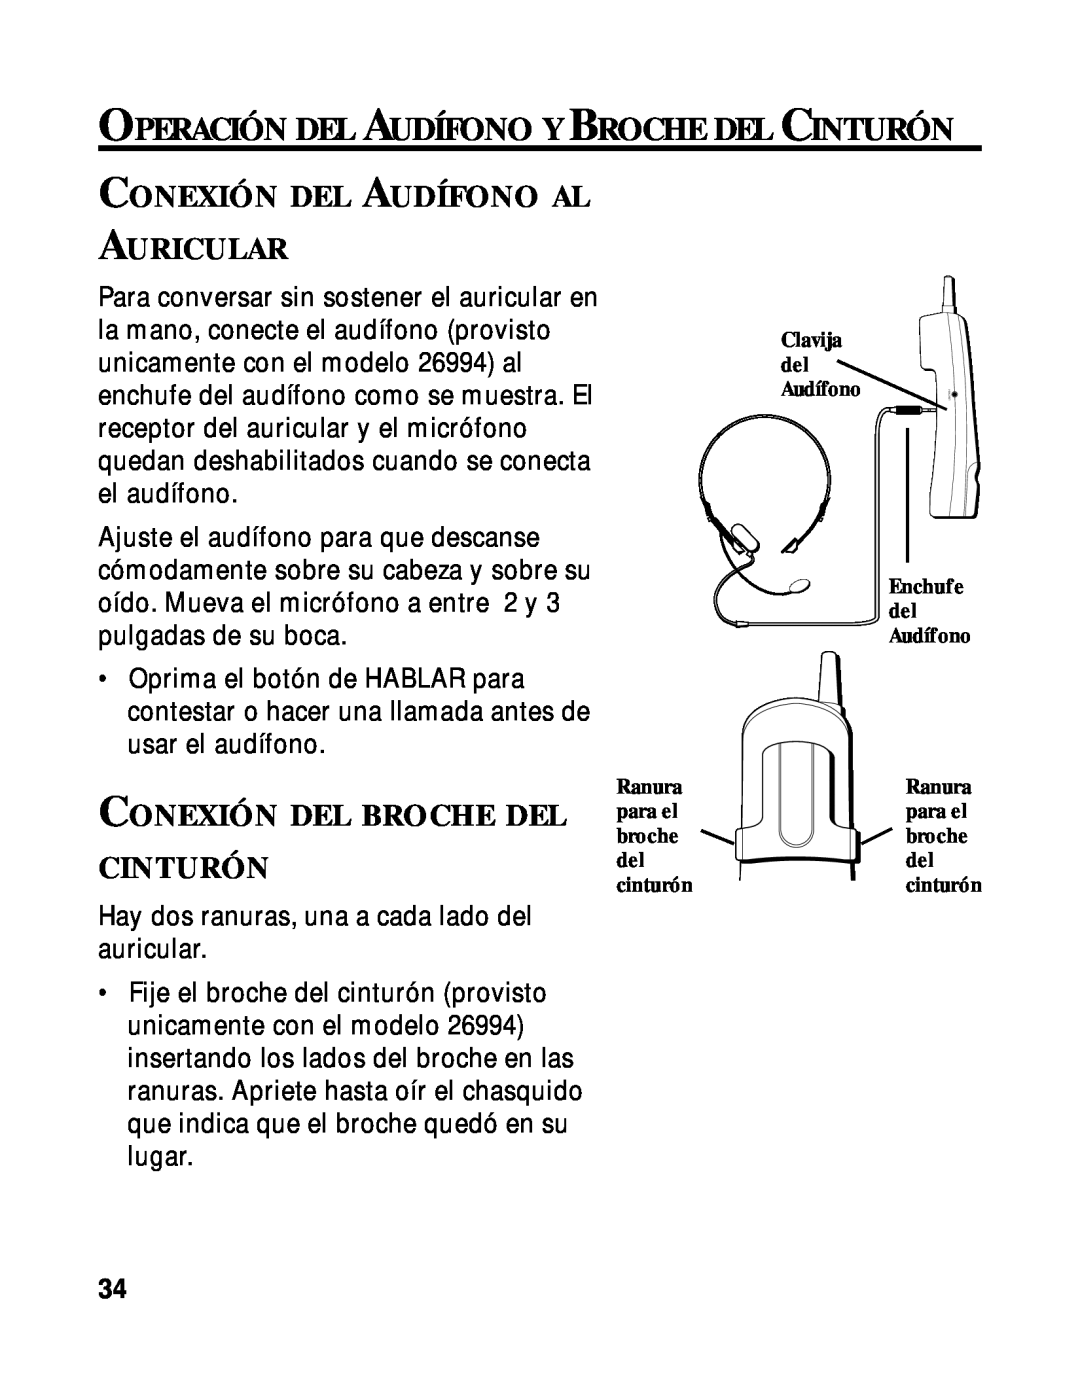 RCA 900 MHz manual Conexión Del Audífono Al Auricular, Conexión Del Broche Del Cinturón 